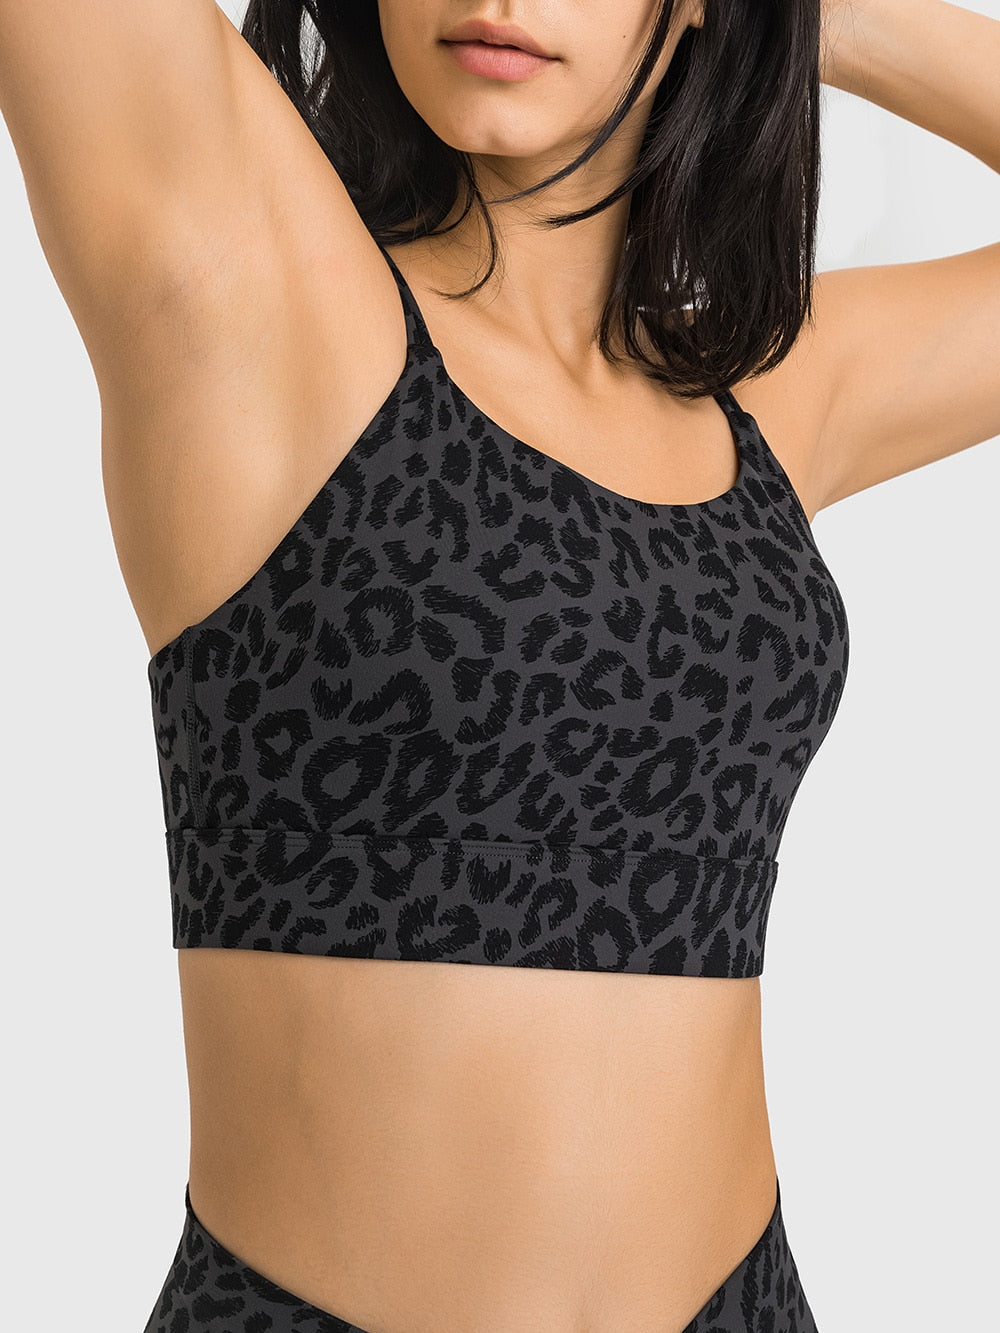 Nike Pro Training tonal leopard print medium support sports bra in